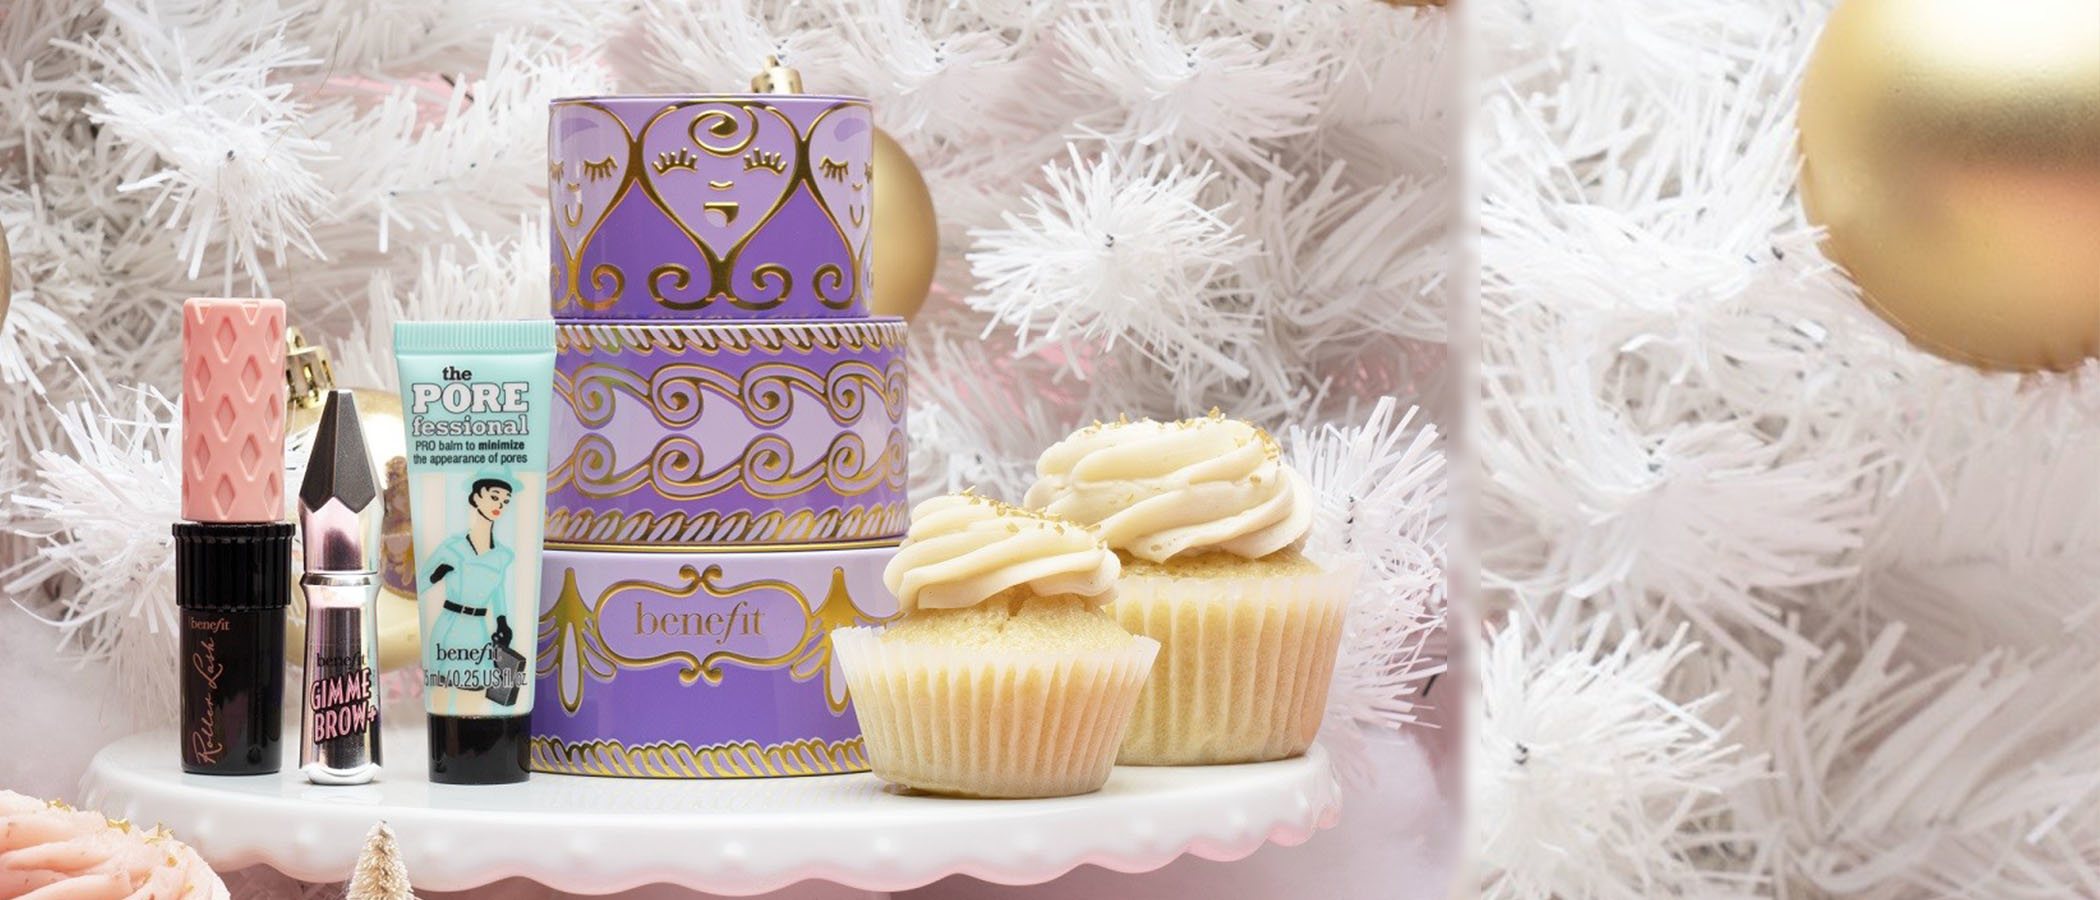 Benefit presenta su tradicional cofre navideño de maquillaje... ¡esta vez con forma de tarta!